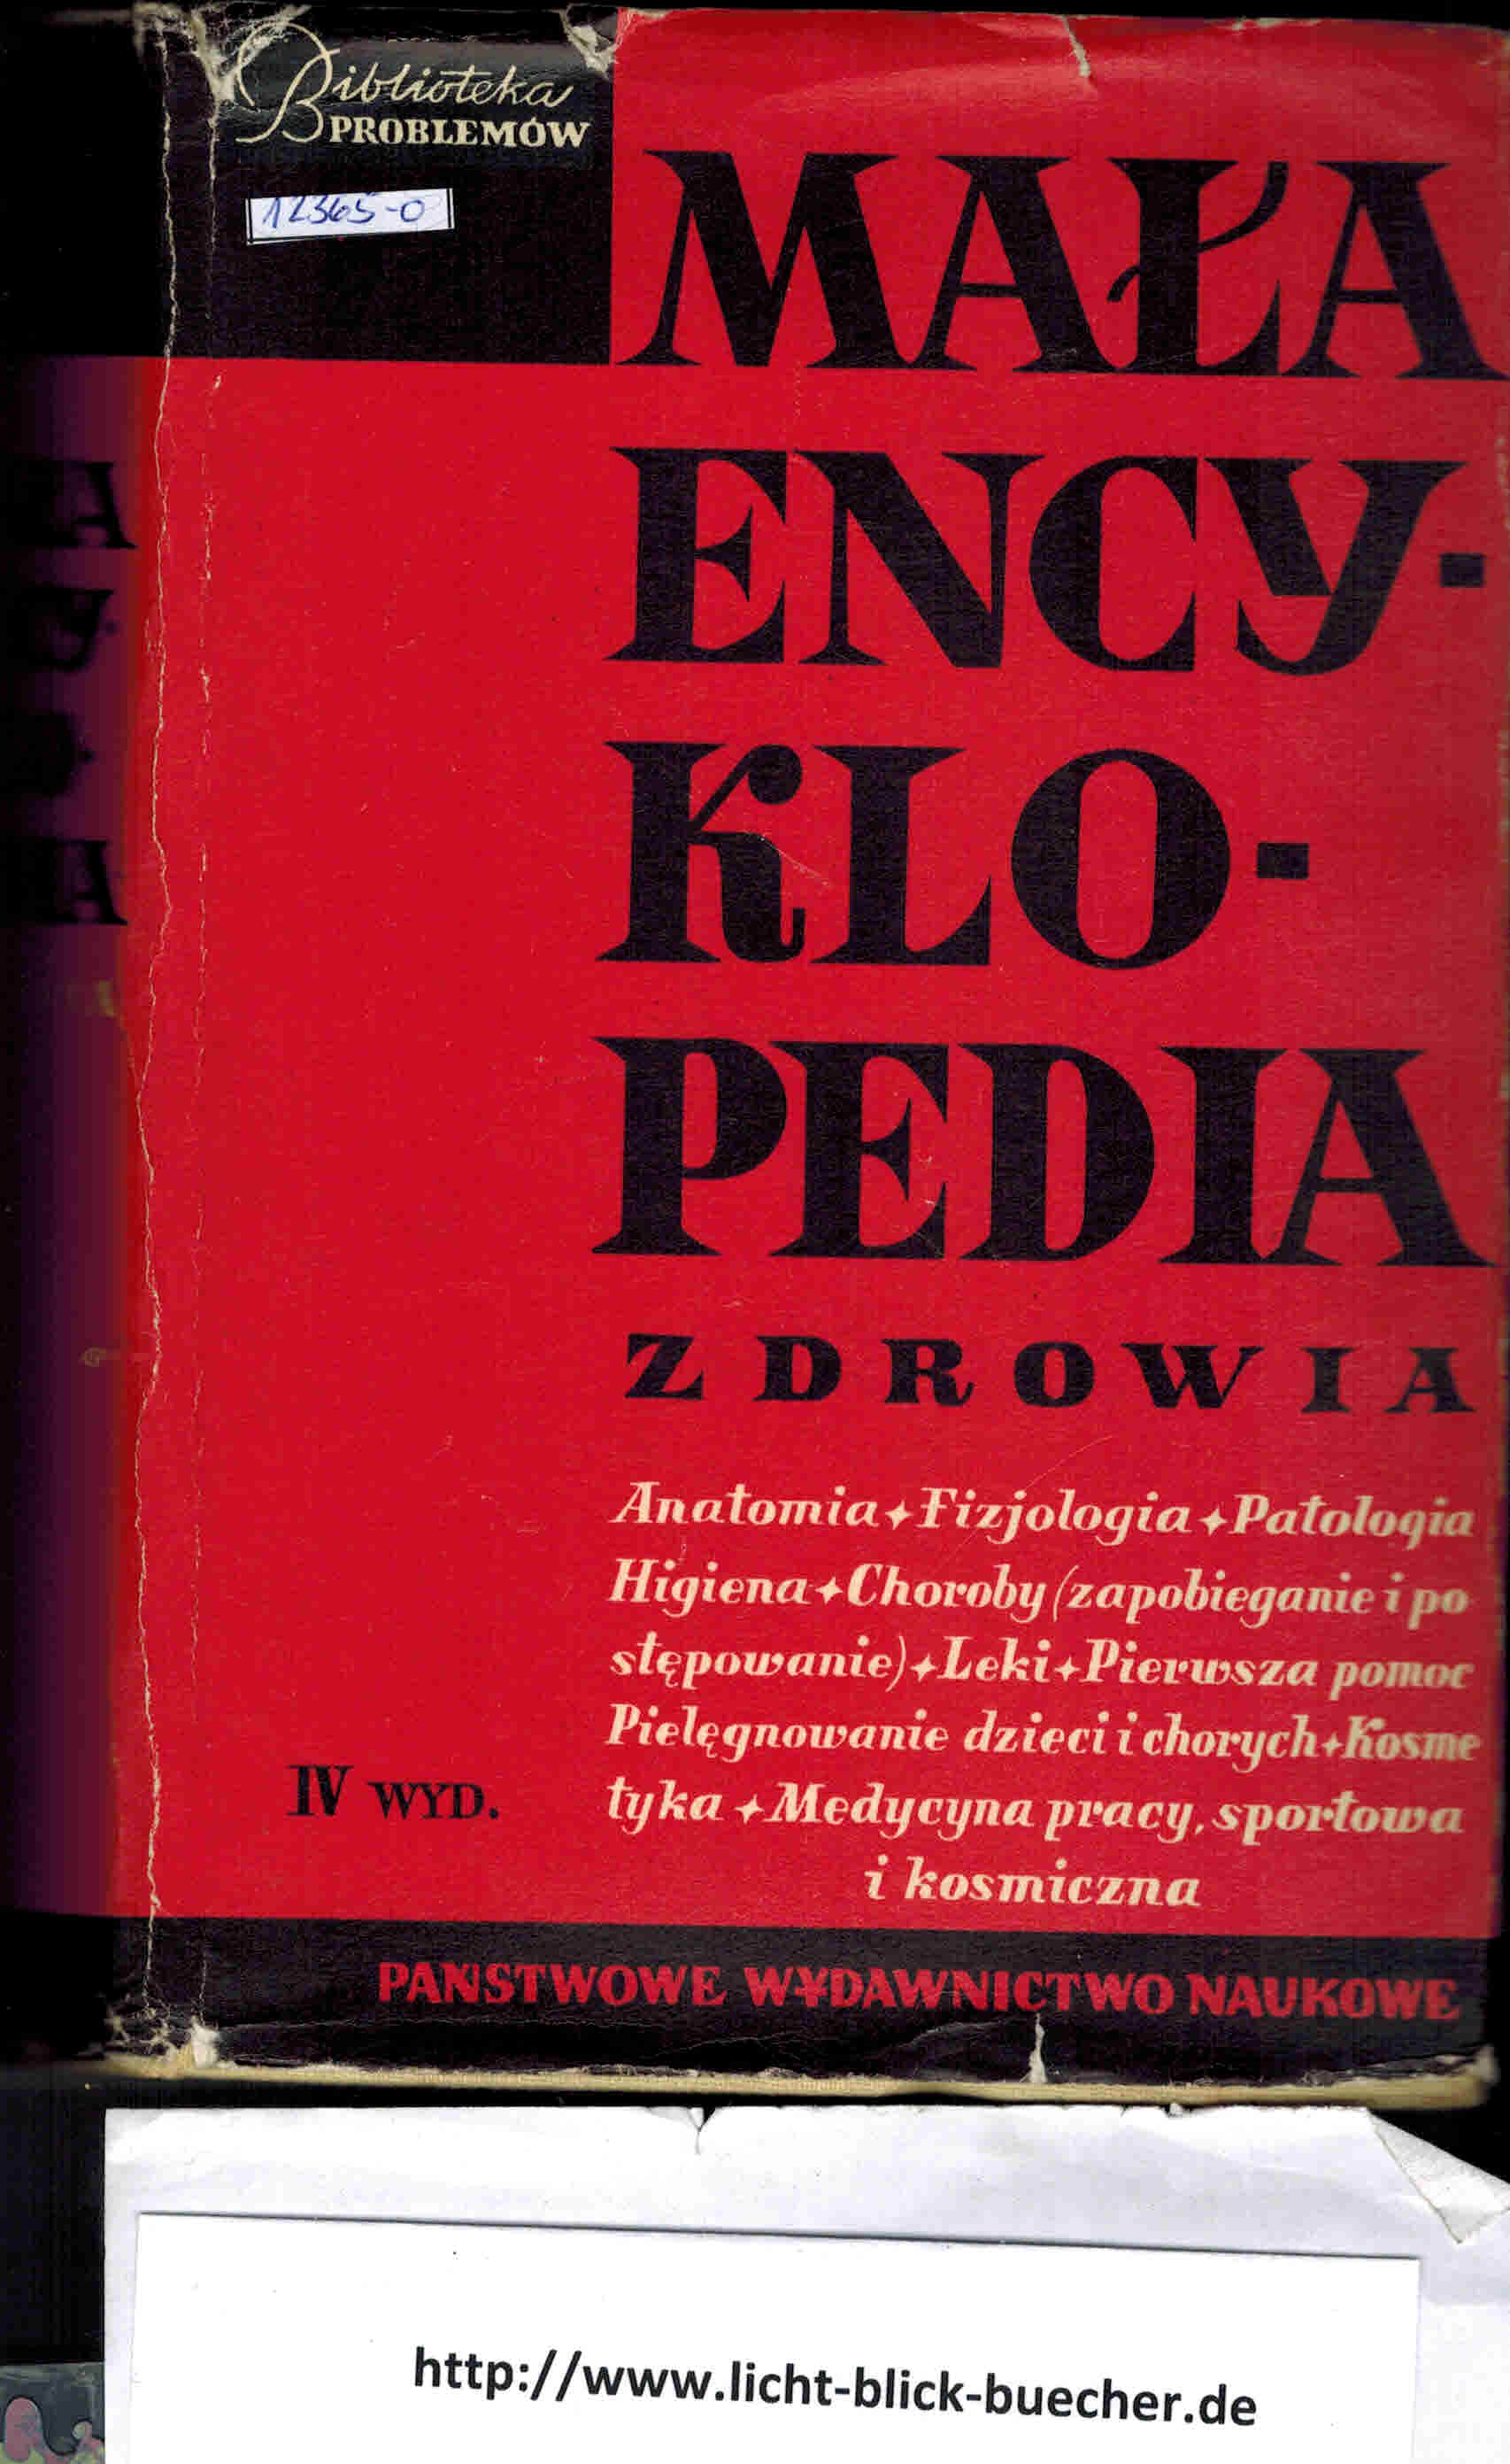 Mala Encyklopedia Zdrowia.Biblioteka ProblemÃ³w